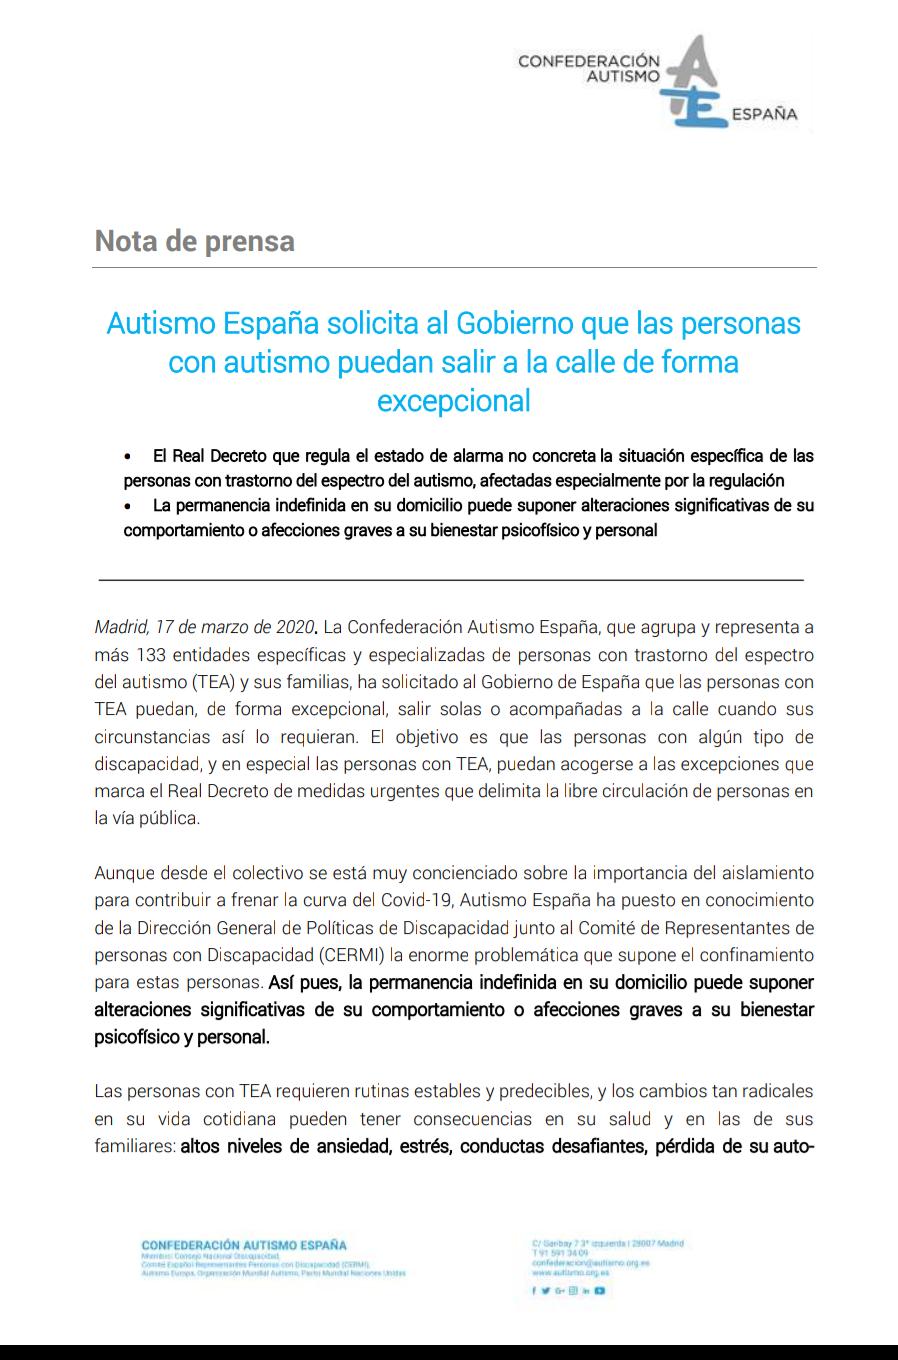 Nota de prensa de Autismo España en la que solicita al Gobierno que las personas con autismo puedan salir a la calle de forma excepcional